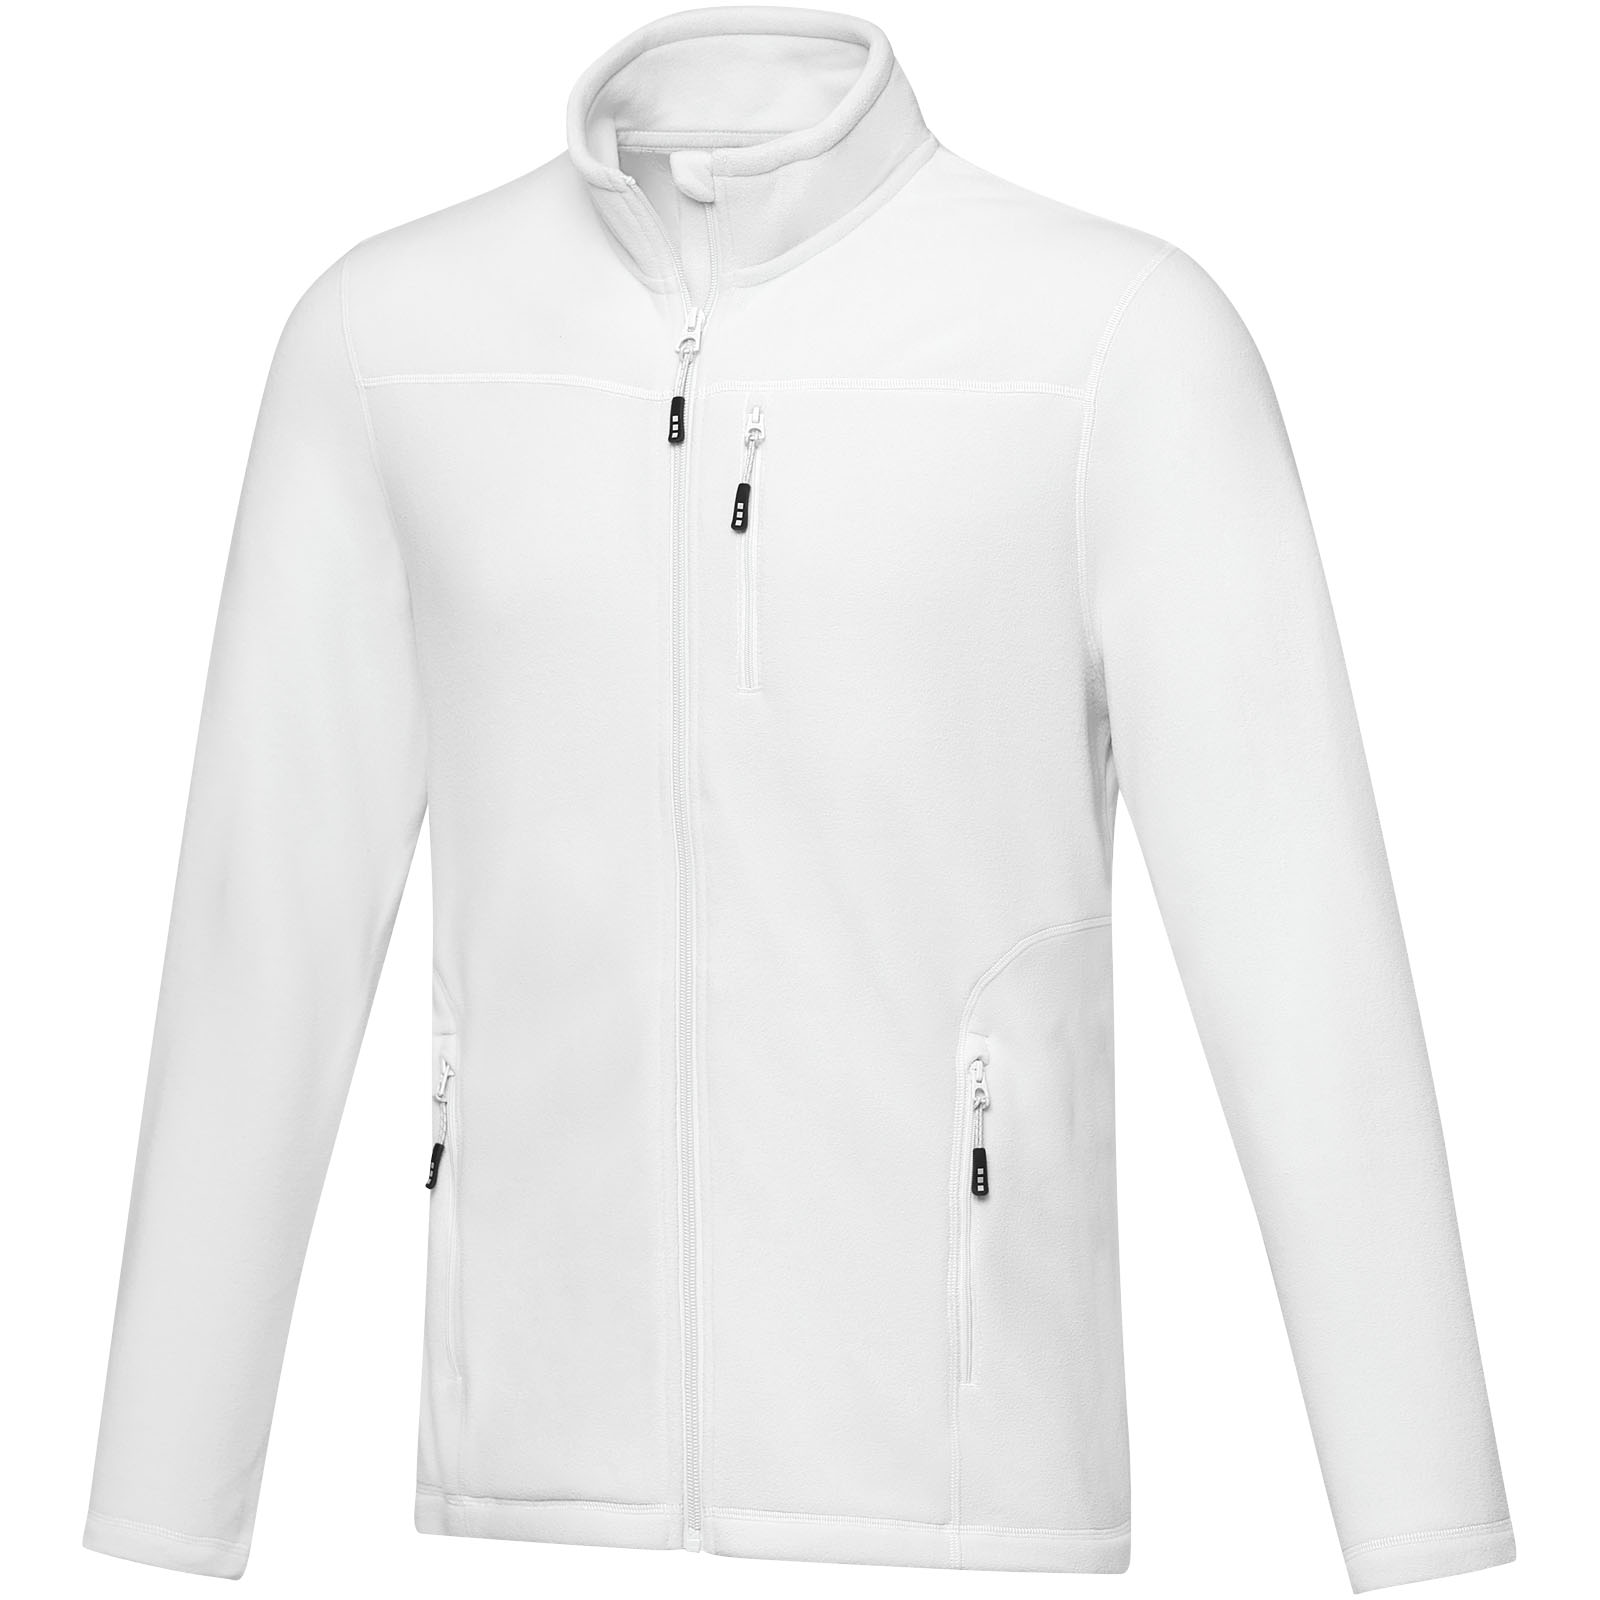 Jackets - Amber men's GRS recycled full zip fleece jacket